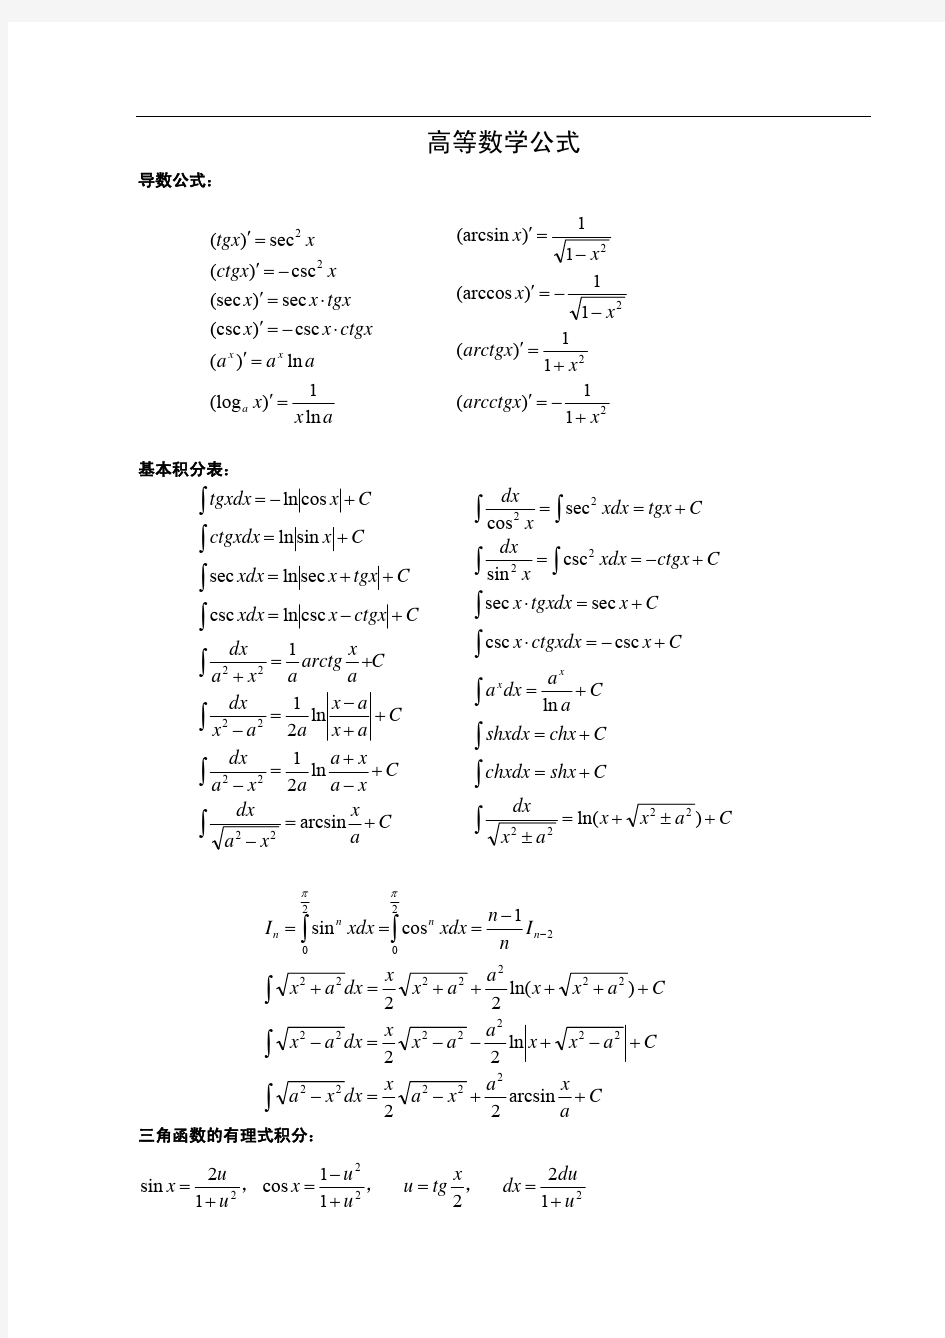 考研数学公式大全(pdf清晰版,)